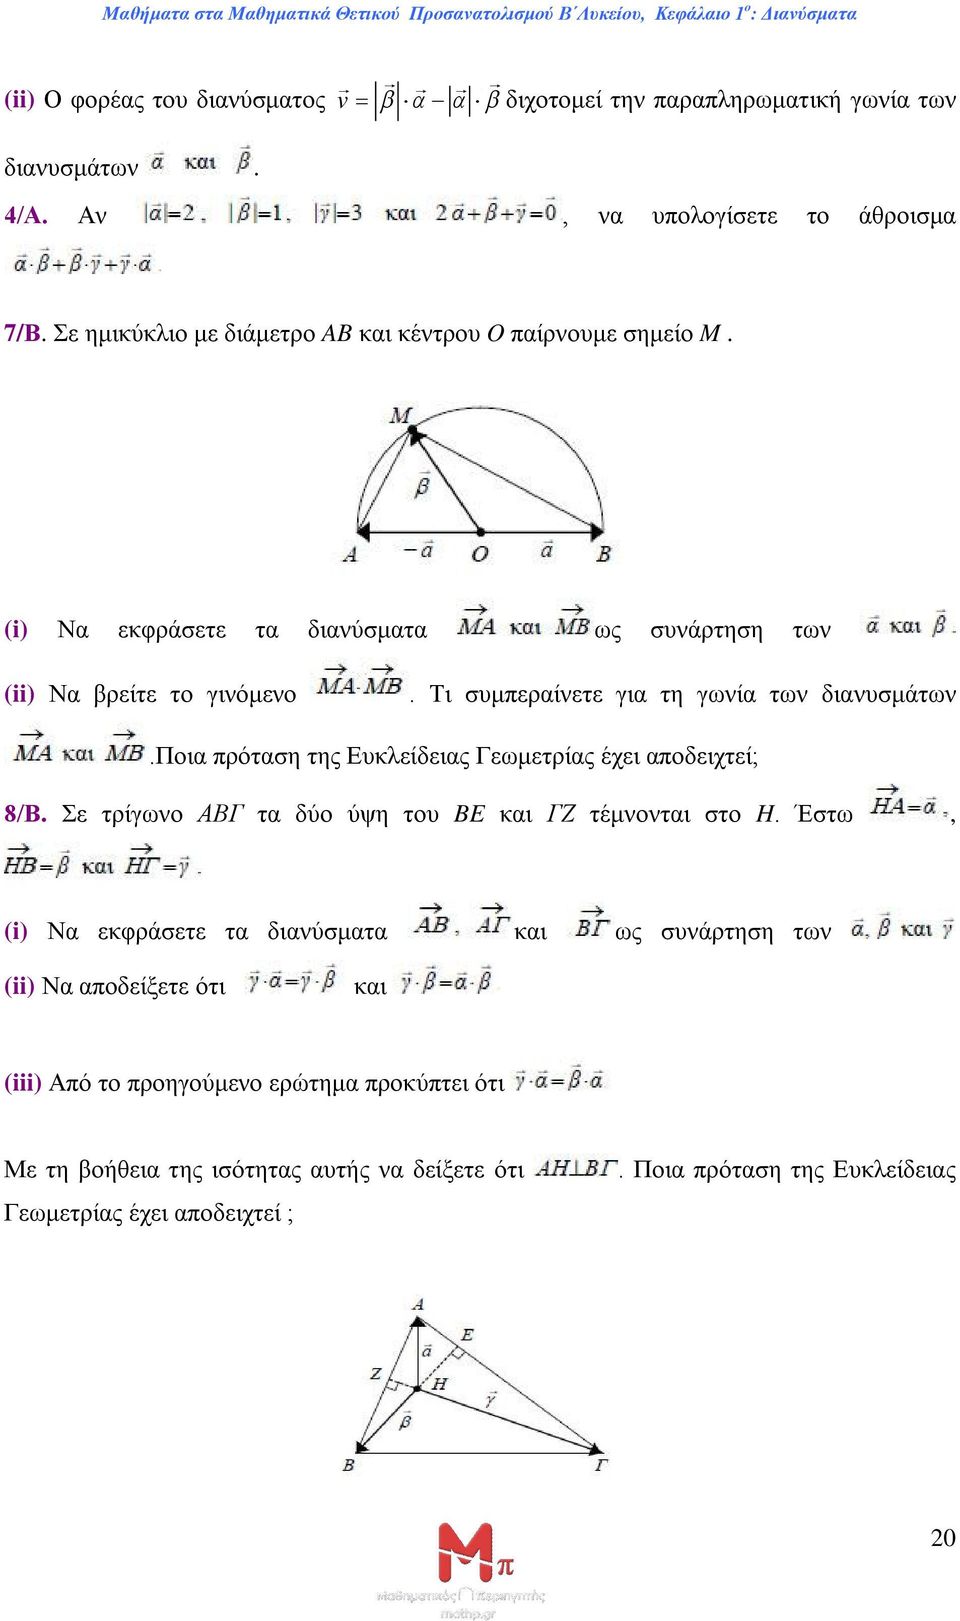 Τι συμπεραίνετε για τη γωνία των διανυσμάτων.ποια πρόταση της Ευκλείδειας Γεωμετρίας έχει αποδειχτεί; 8/Β. Σε τρίγωνο ABΓ τα δύο ύψη του BE και ΓΖ τέμνονται στο H.